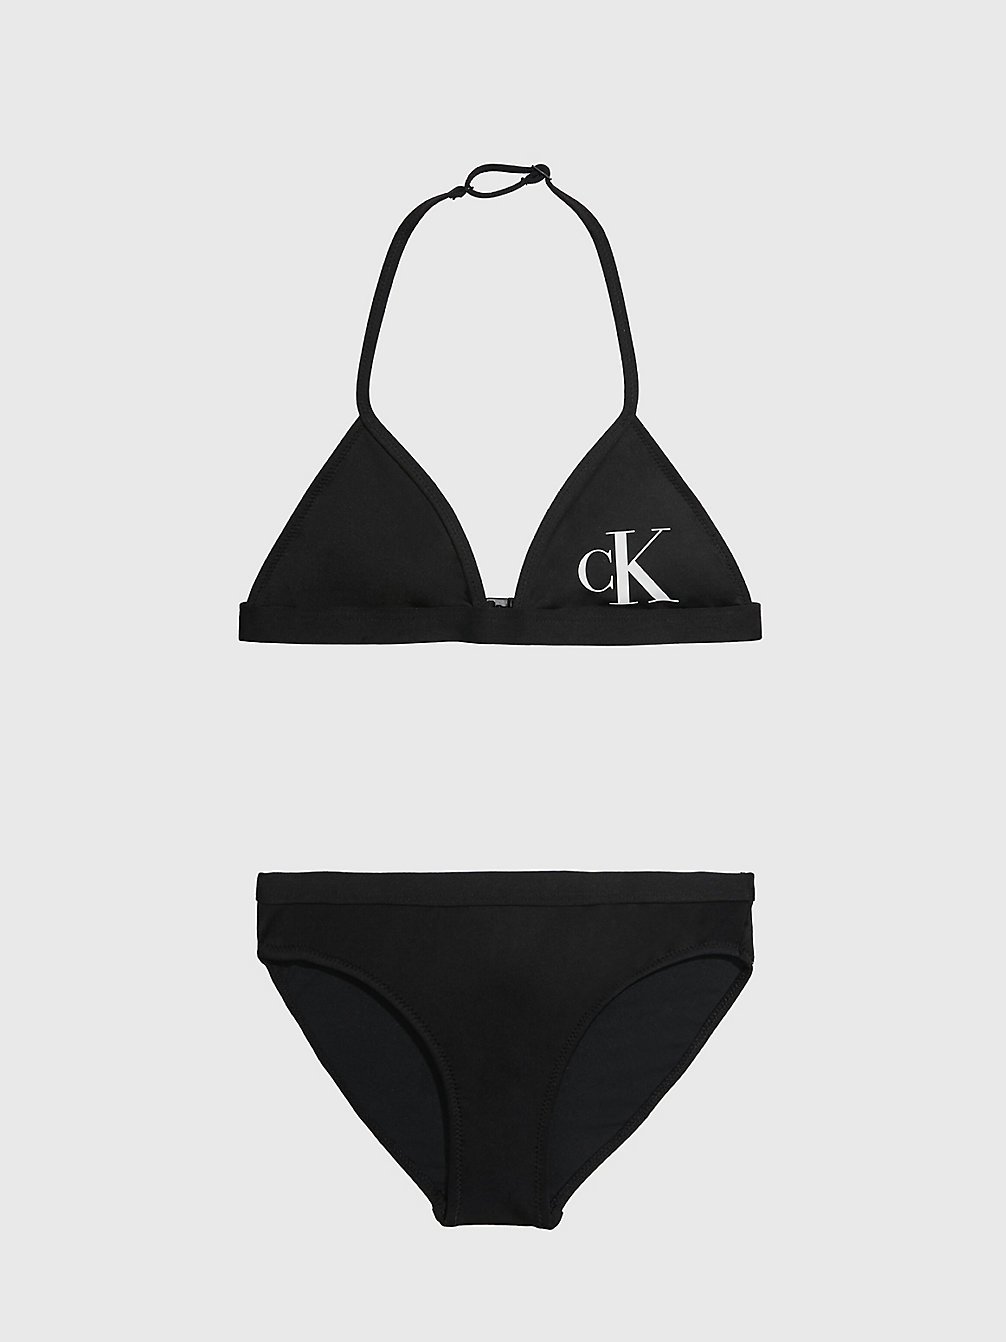 PVH BLACK Girls Triangle Bikini Set - CK Monogram undefined girls Calvin Klein